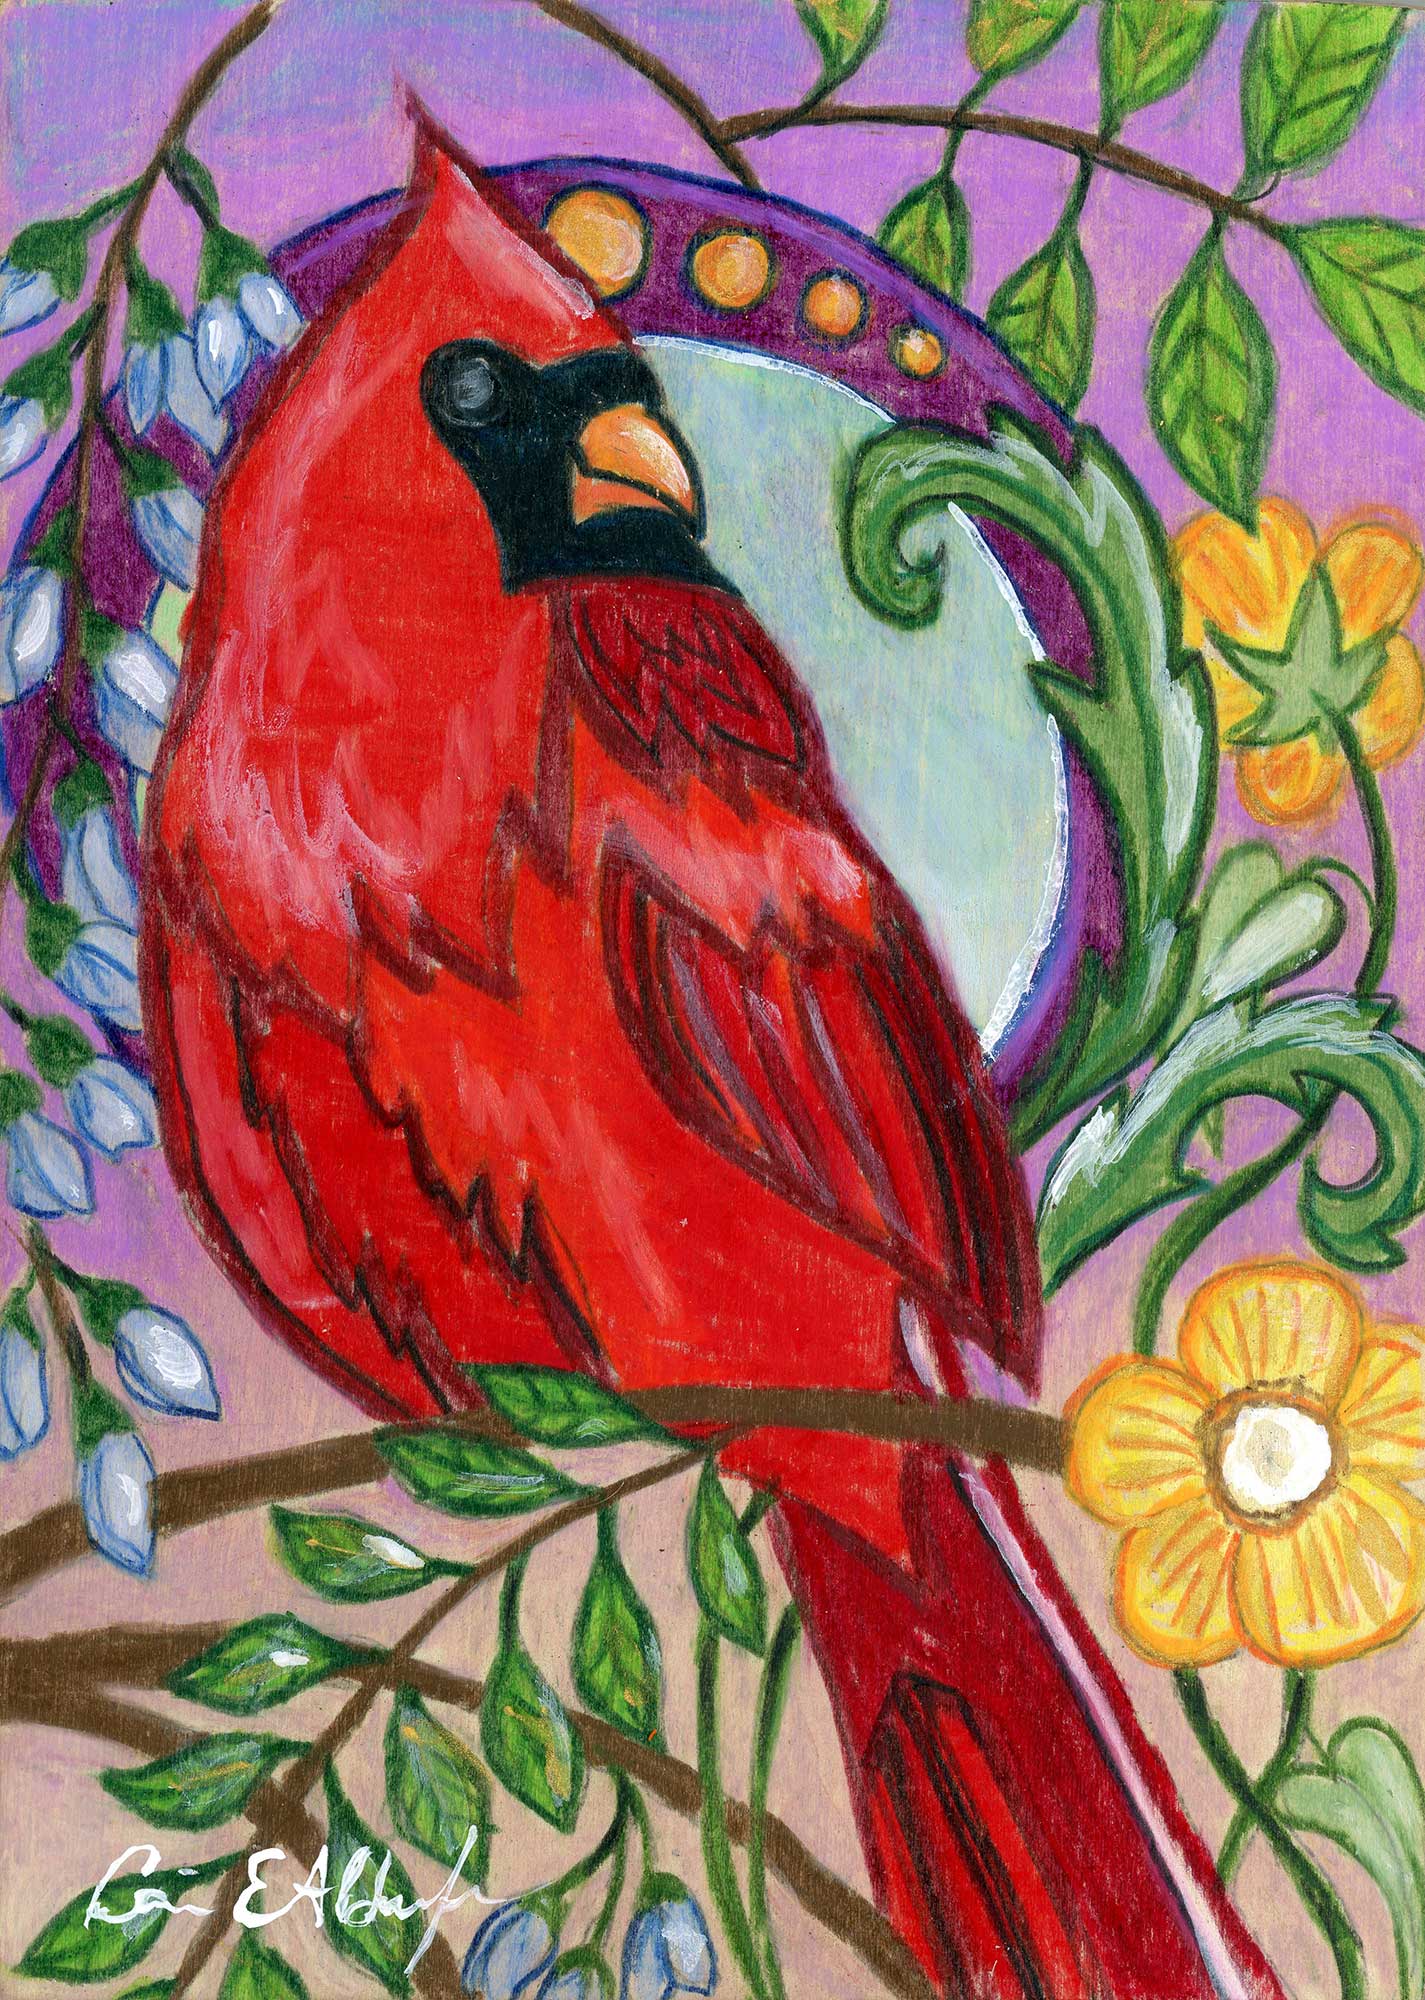 SOLD - "Garden Cardinal", 5" x 7", mixed media